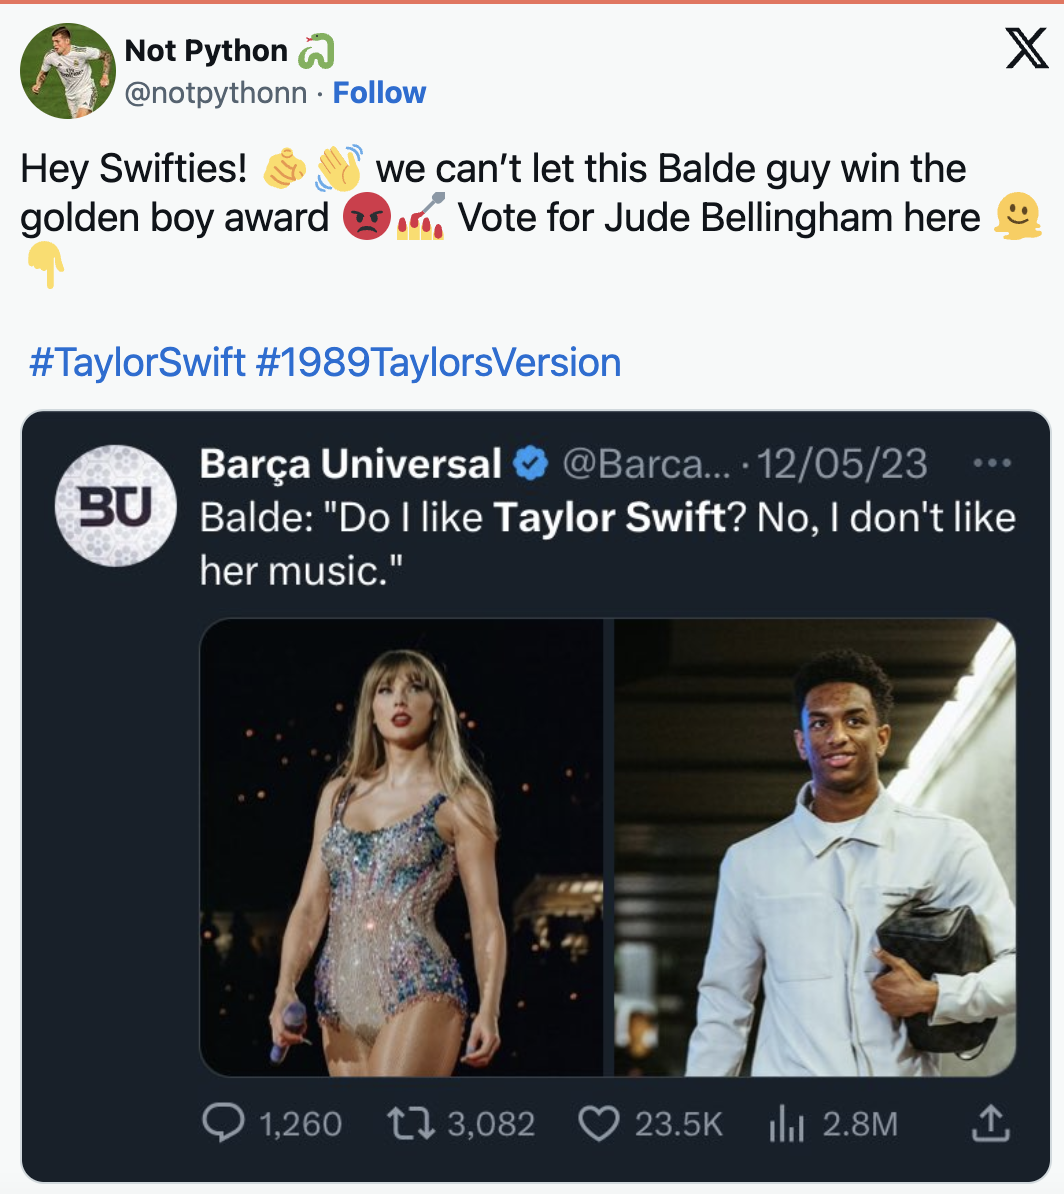 Sao trẻ Barca nguy cơ hụt danh hiệu Cậu bé Vàng vì Taylor Swift - Bóng Đá